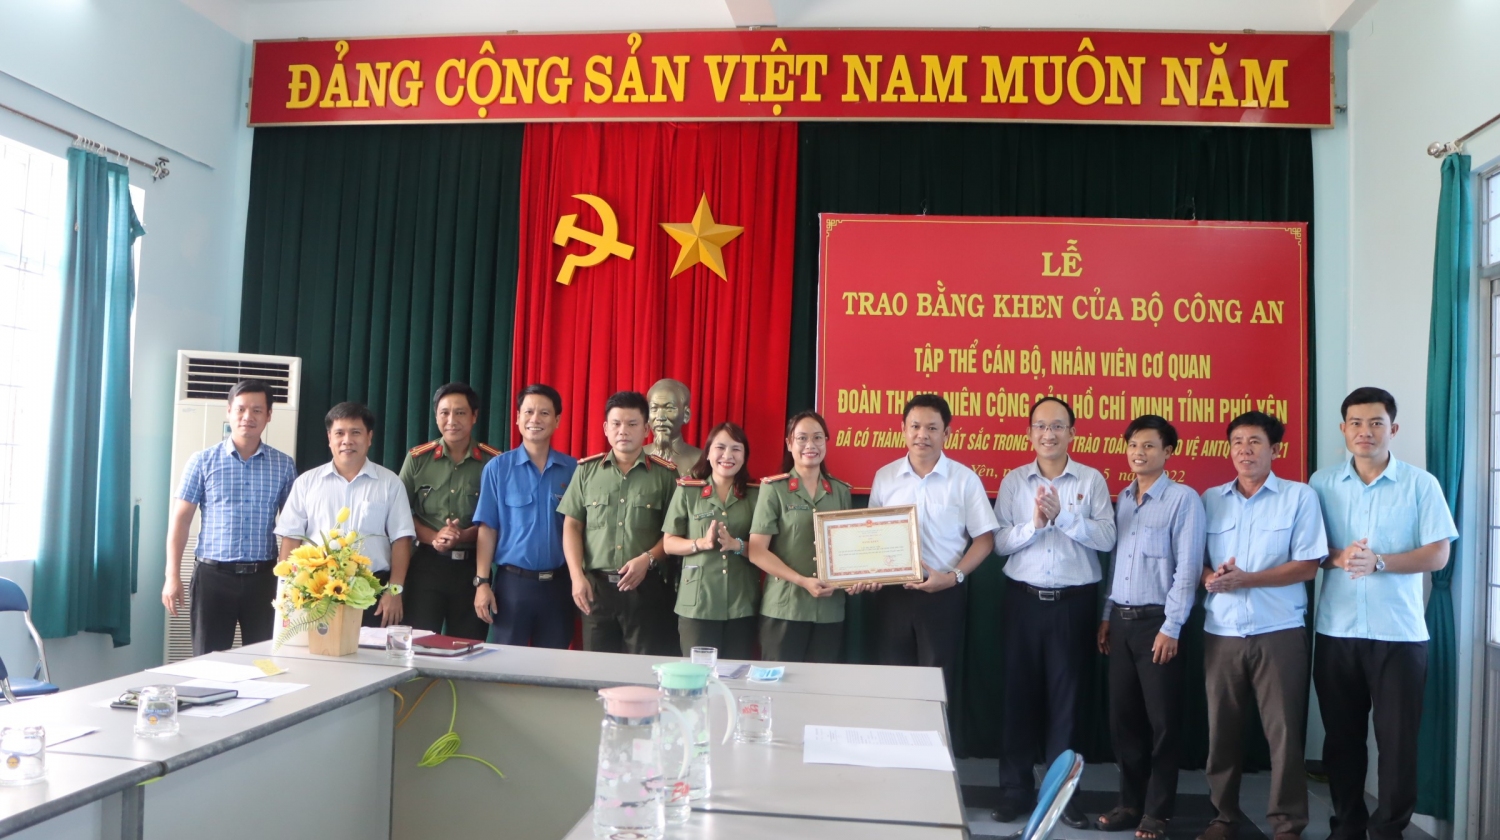 Trao bằng khen của Bộ Công an cho tập thể cán bộ, nhân viên cơ quan Đoàn Thanh niên Cộng sản Hồ Chí Minh tỉnh Phú Yên.